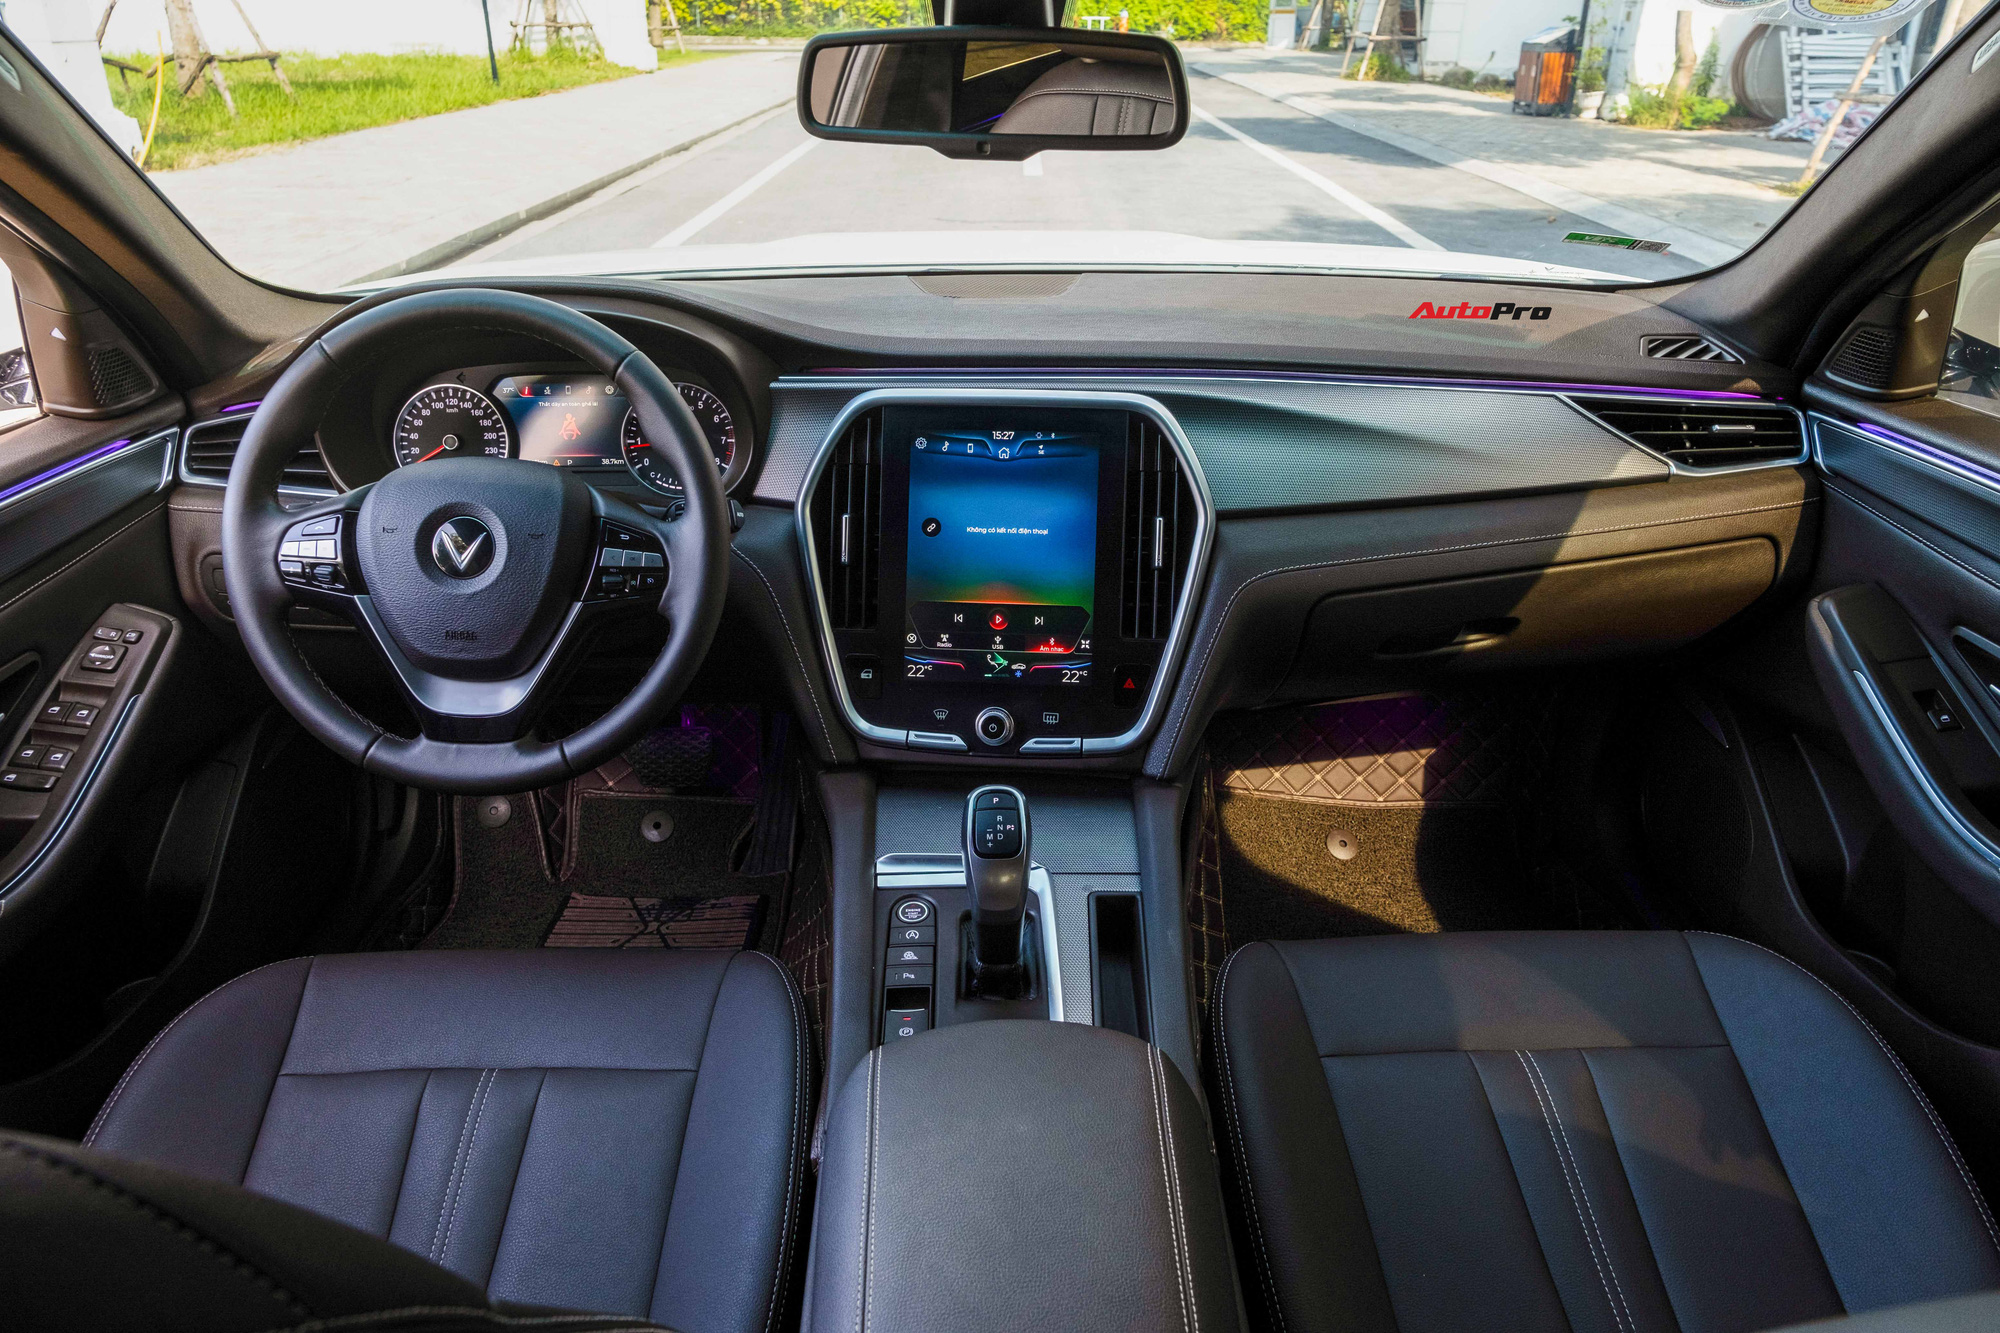 Mới chạy 20.000km, VinFast Lux A2.0 Plus bán lại ngang giá Mazda6 tiêu chuẩn - Ảnh 4.